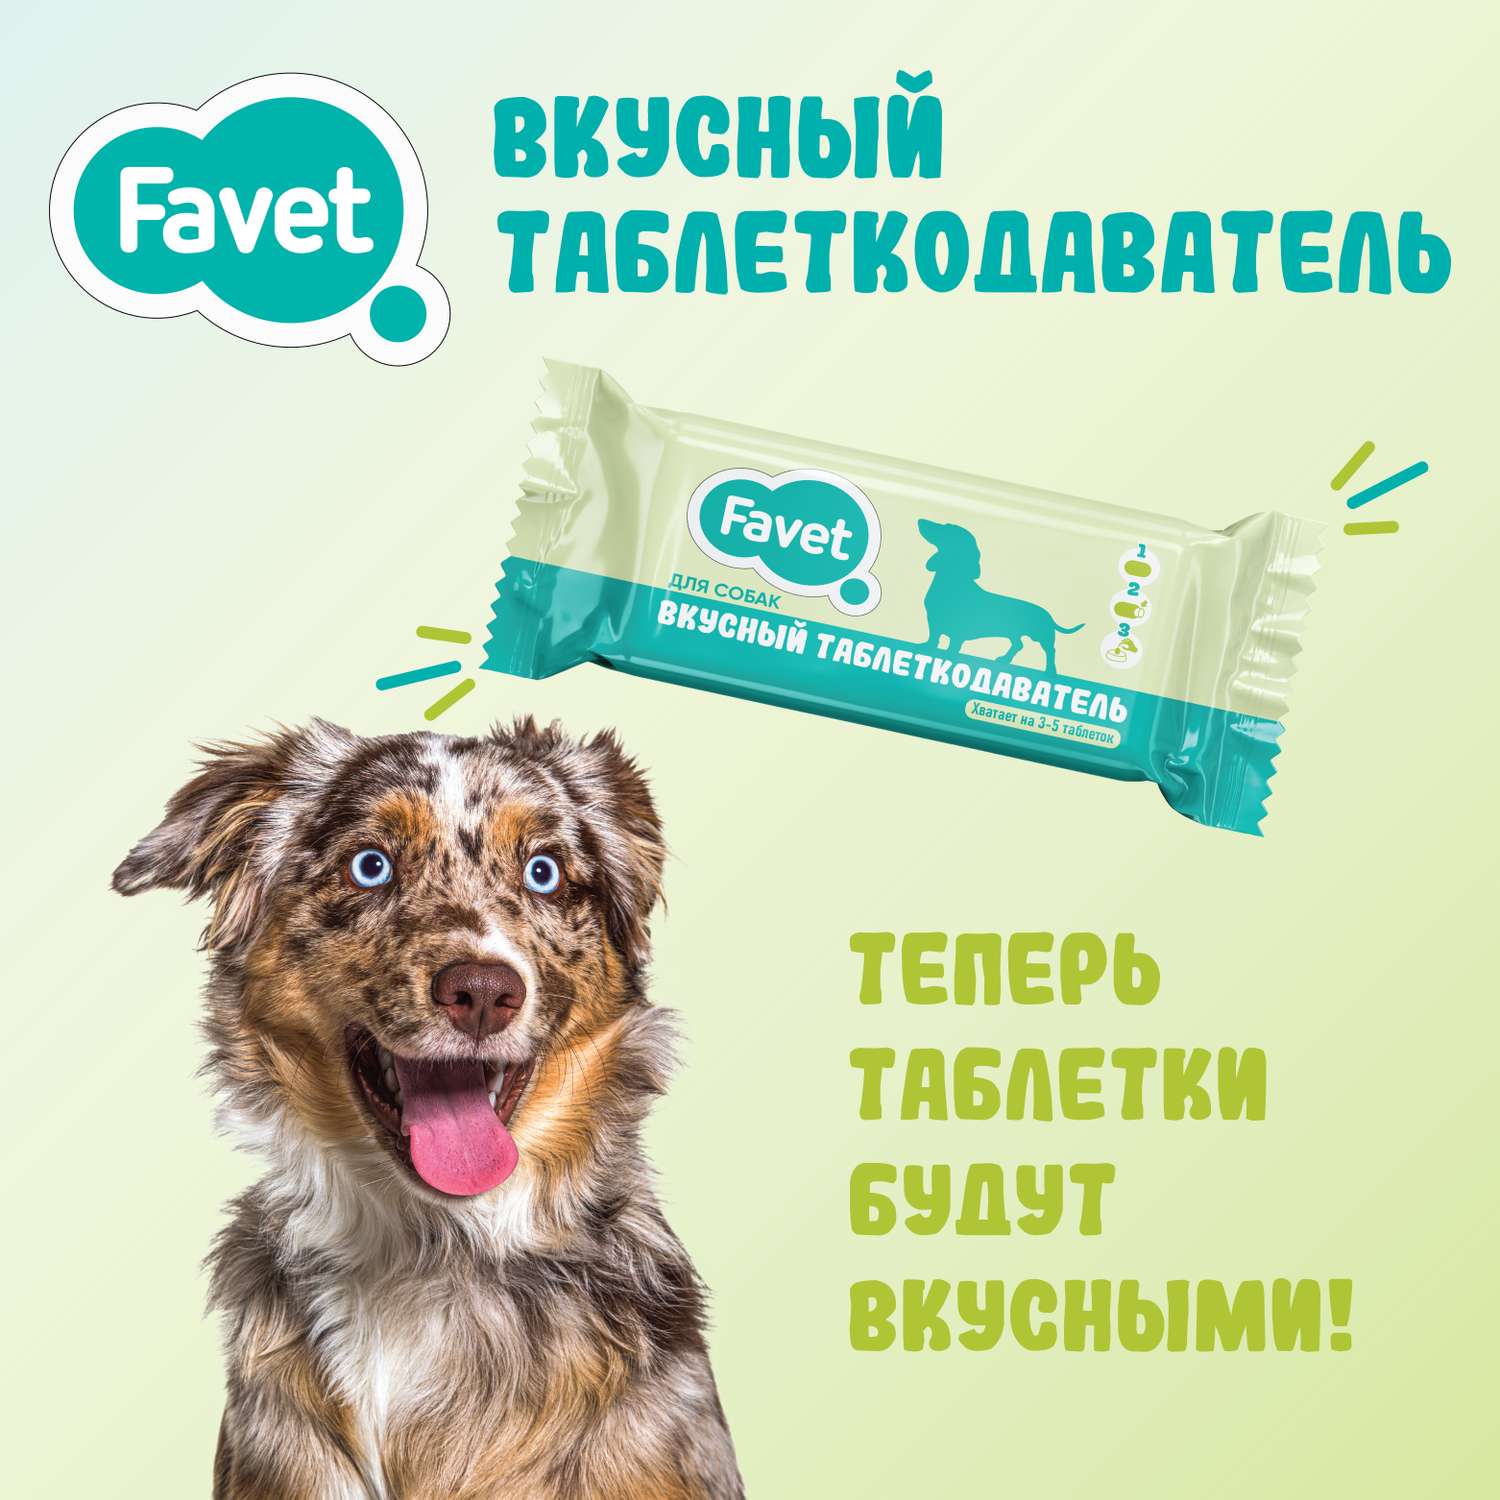 Таблеткодаватель для собак Favet Вкусный 1шт - фото 2